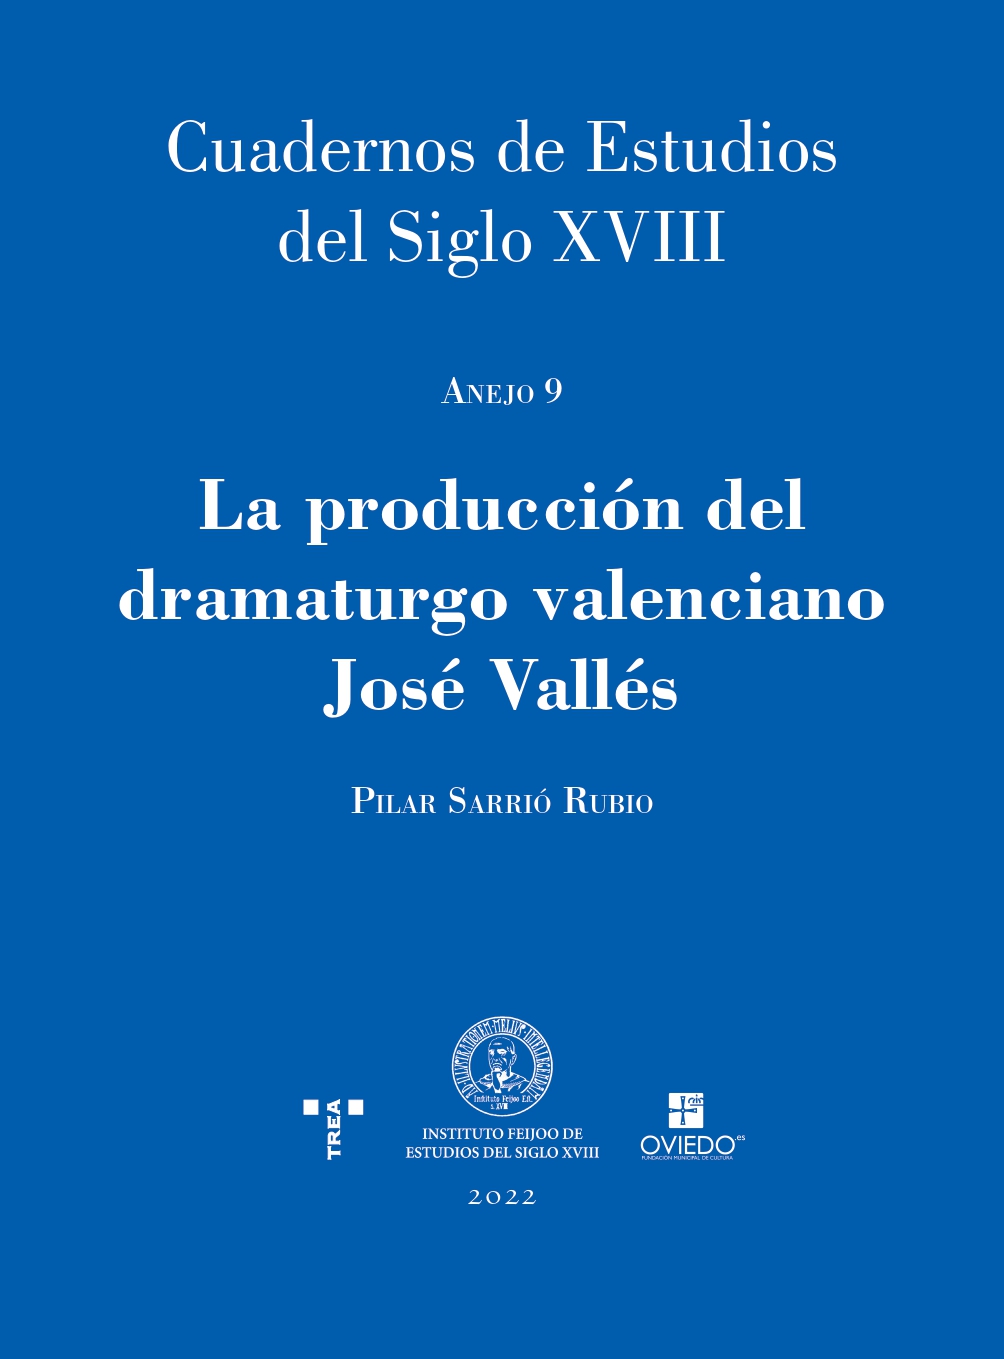 Imagen de portada del libro La producción del dramaturgo valenciano José Vallés